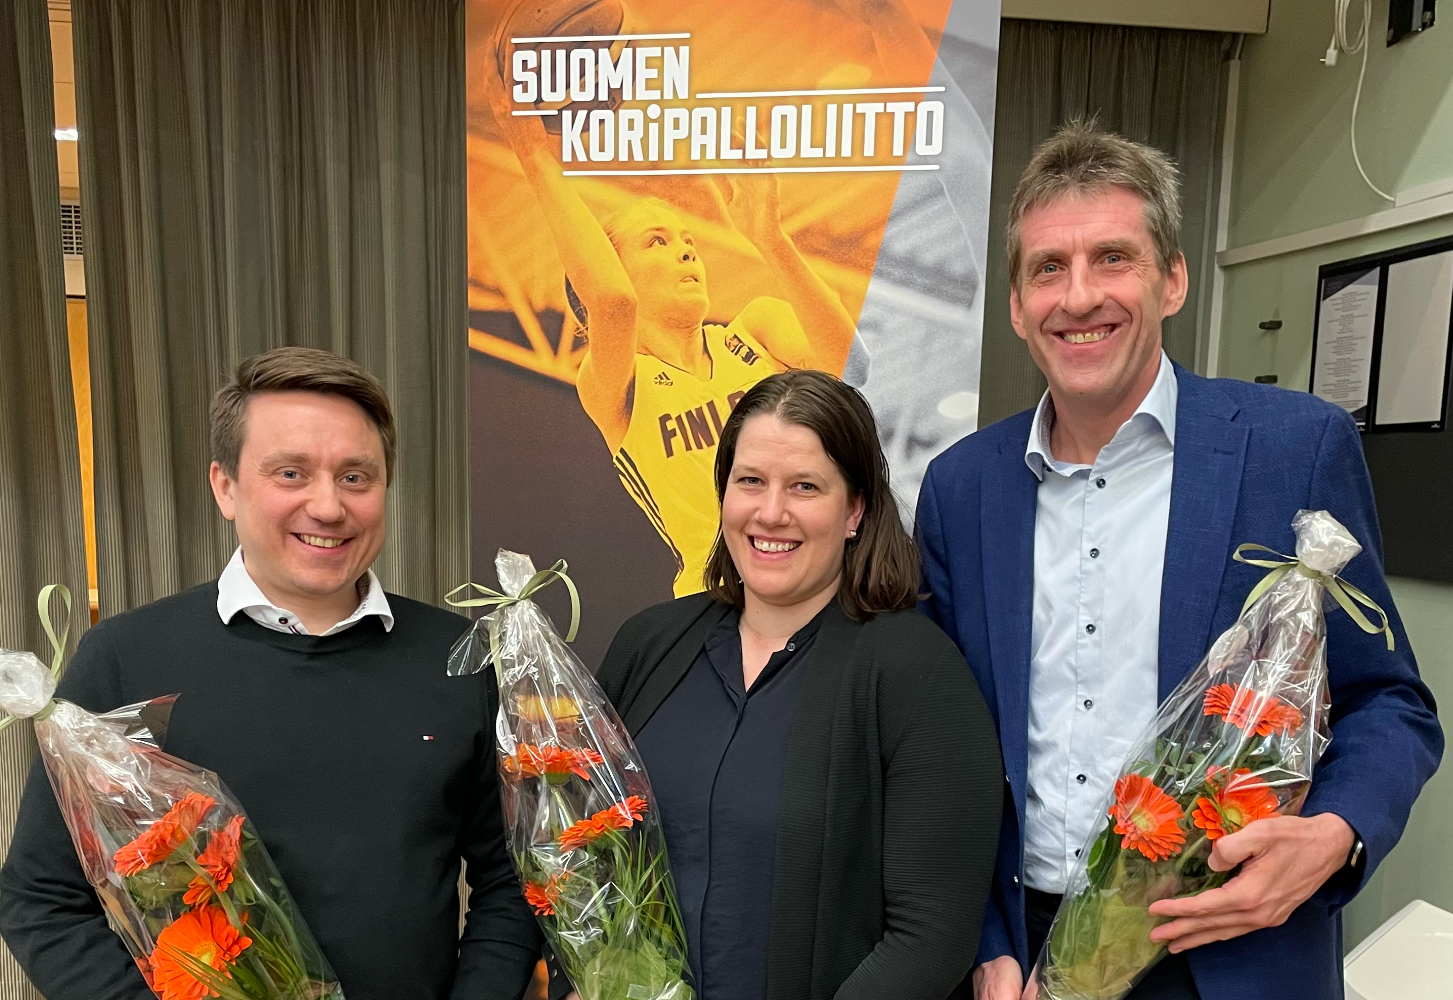 Jaakko Hietala, Elisa Hakanen ja Kari Mattila valittiin kolmivuotiskaudelle Koripalloliiton hallitukseen.